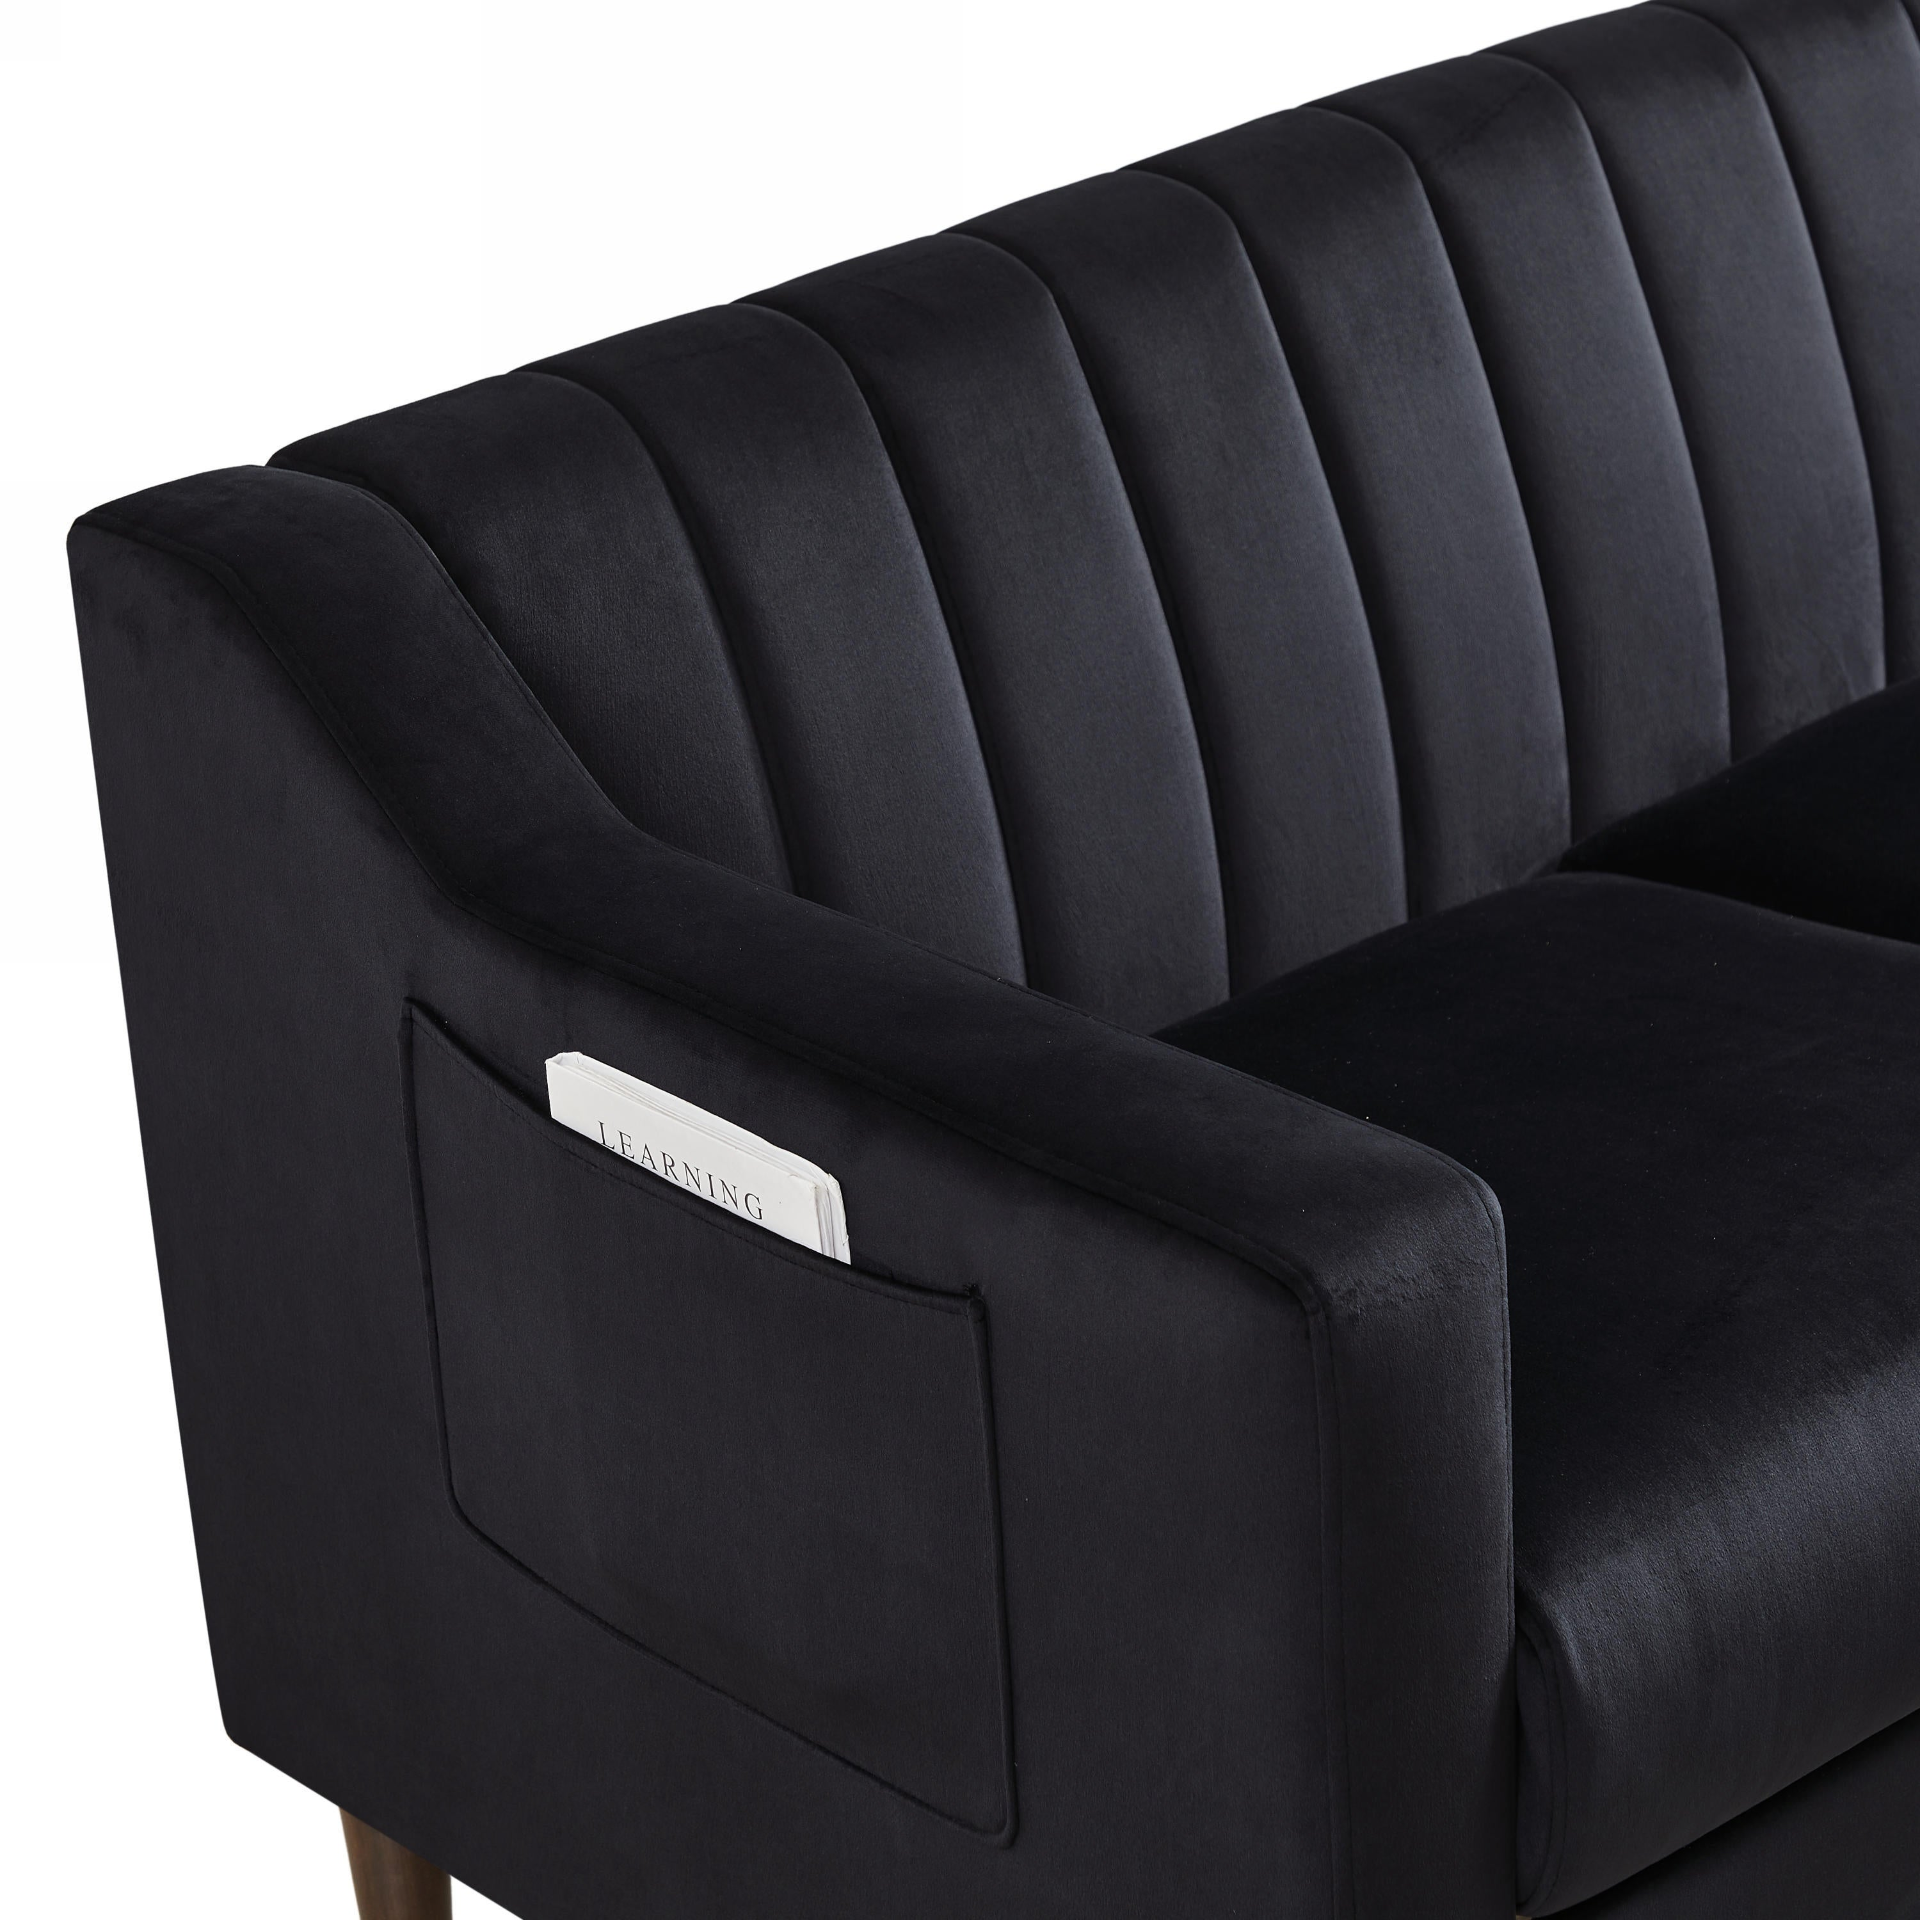 Black Velvet 3-Seat Upholstered Sofa with Wooden Legs (77"x28")